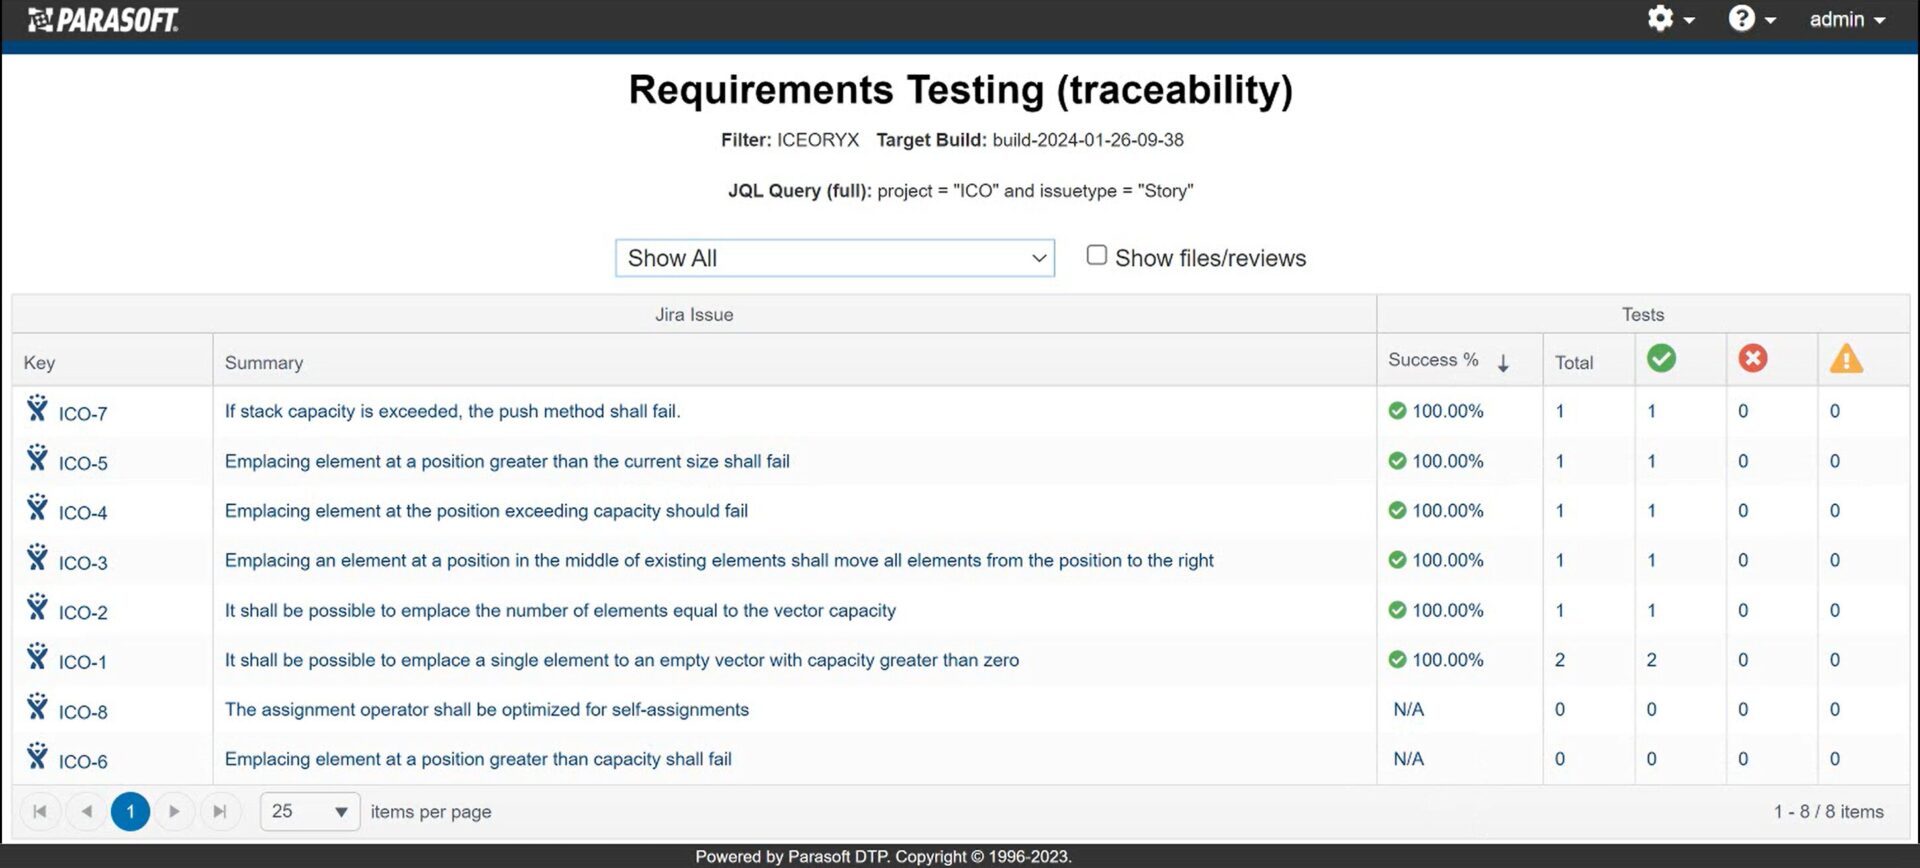 Capture d'écran des exigences CT du test Parasoft C/C++ Tester la traçabilité, relier les cas de test et vérifier les résultats de l'exécution des tests.